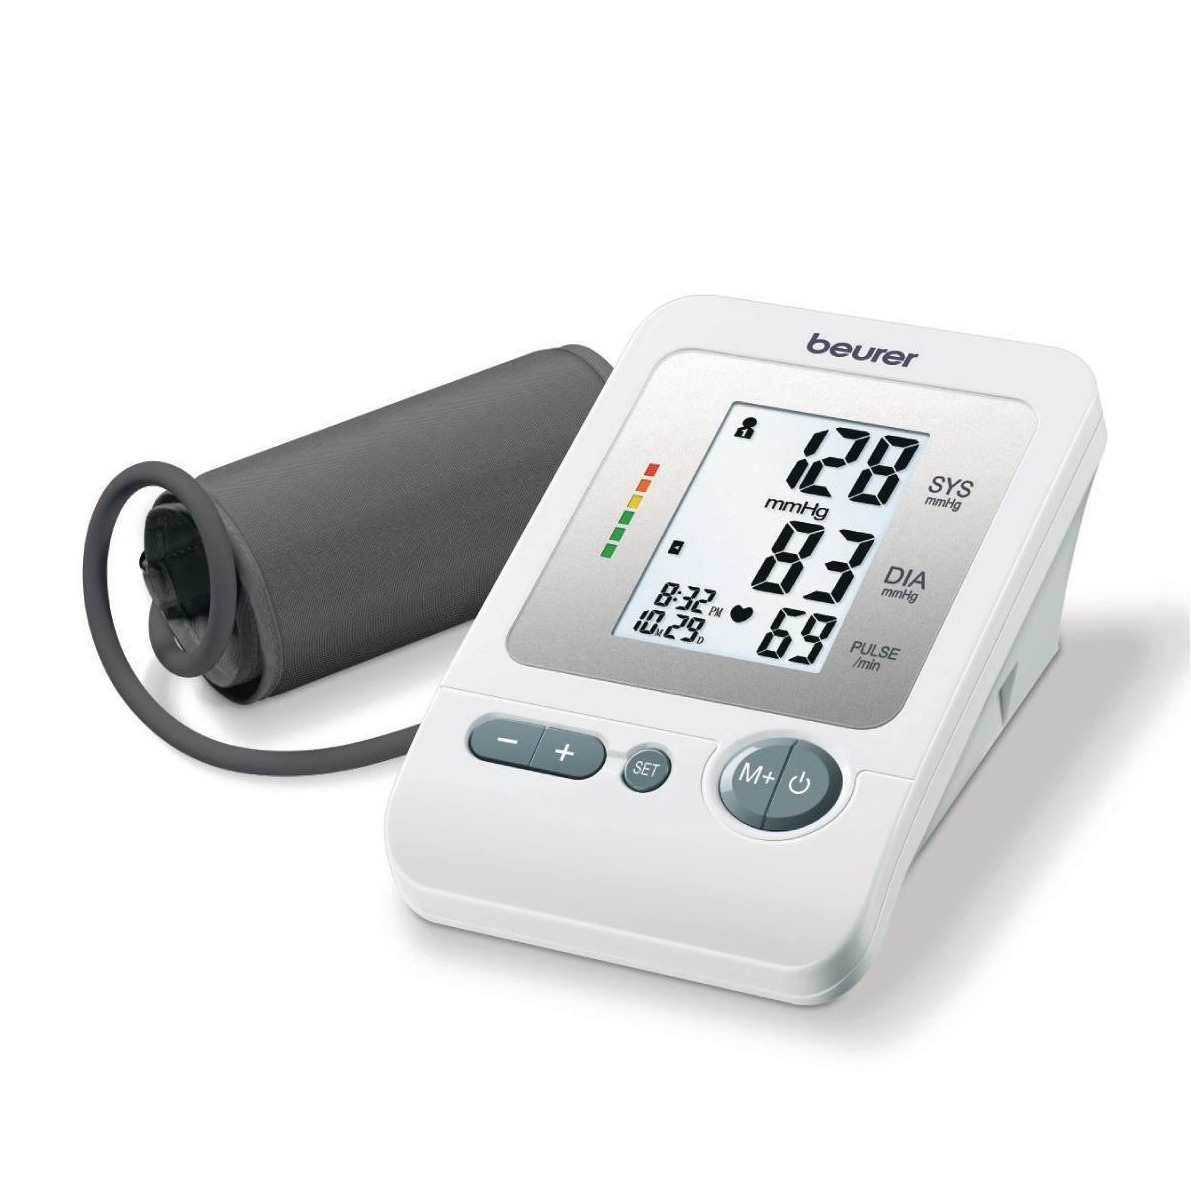 Image of beurer - BM 26 Blutdruckmessgerät für den Oberarm mit LCD Anzeige - Weiss bei Apfelkiste.ch